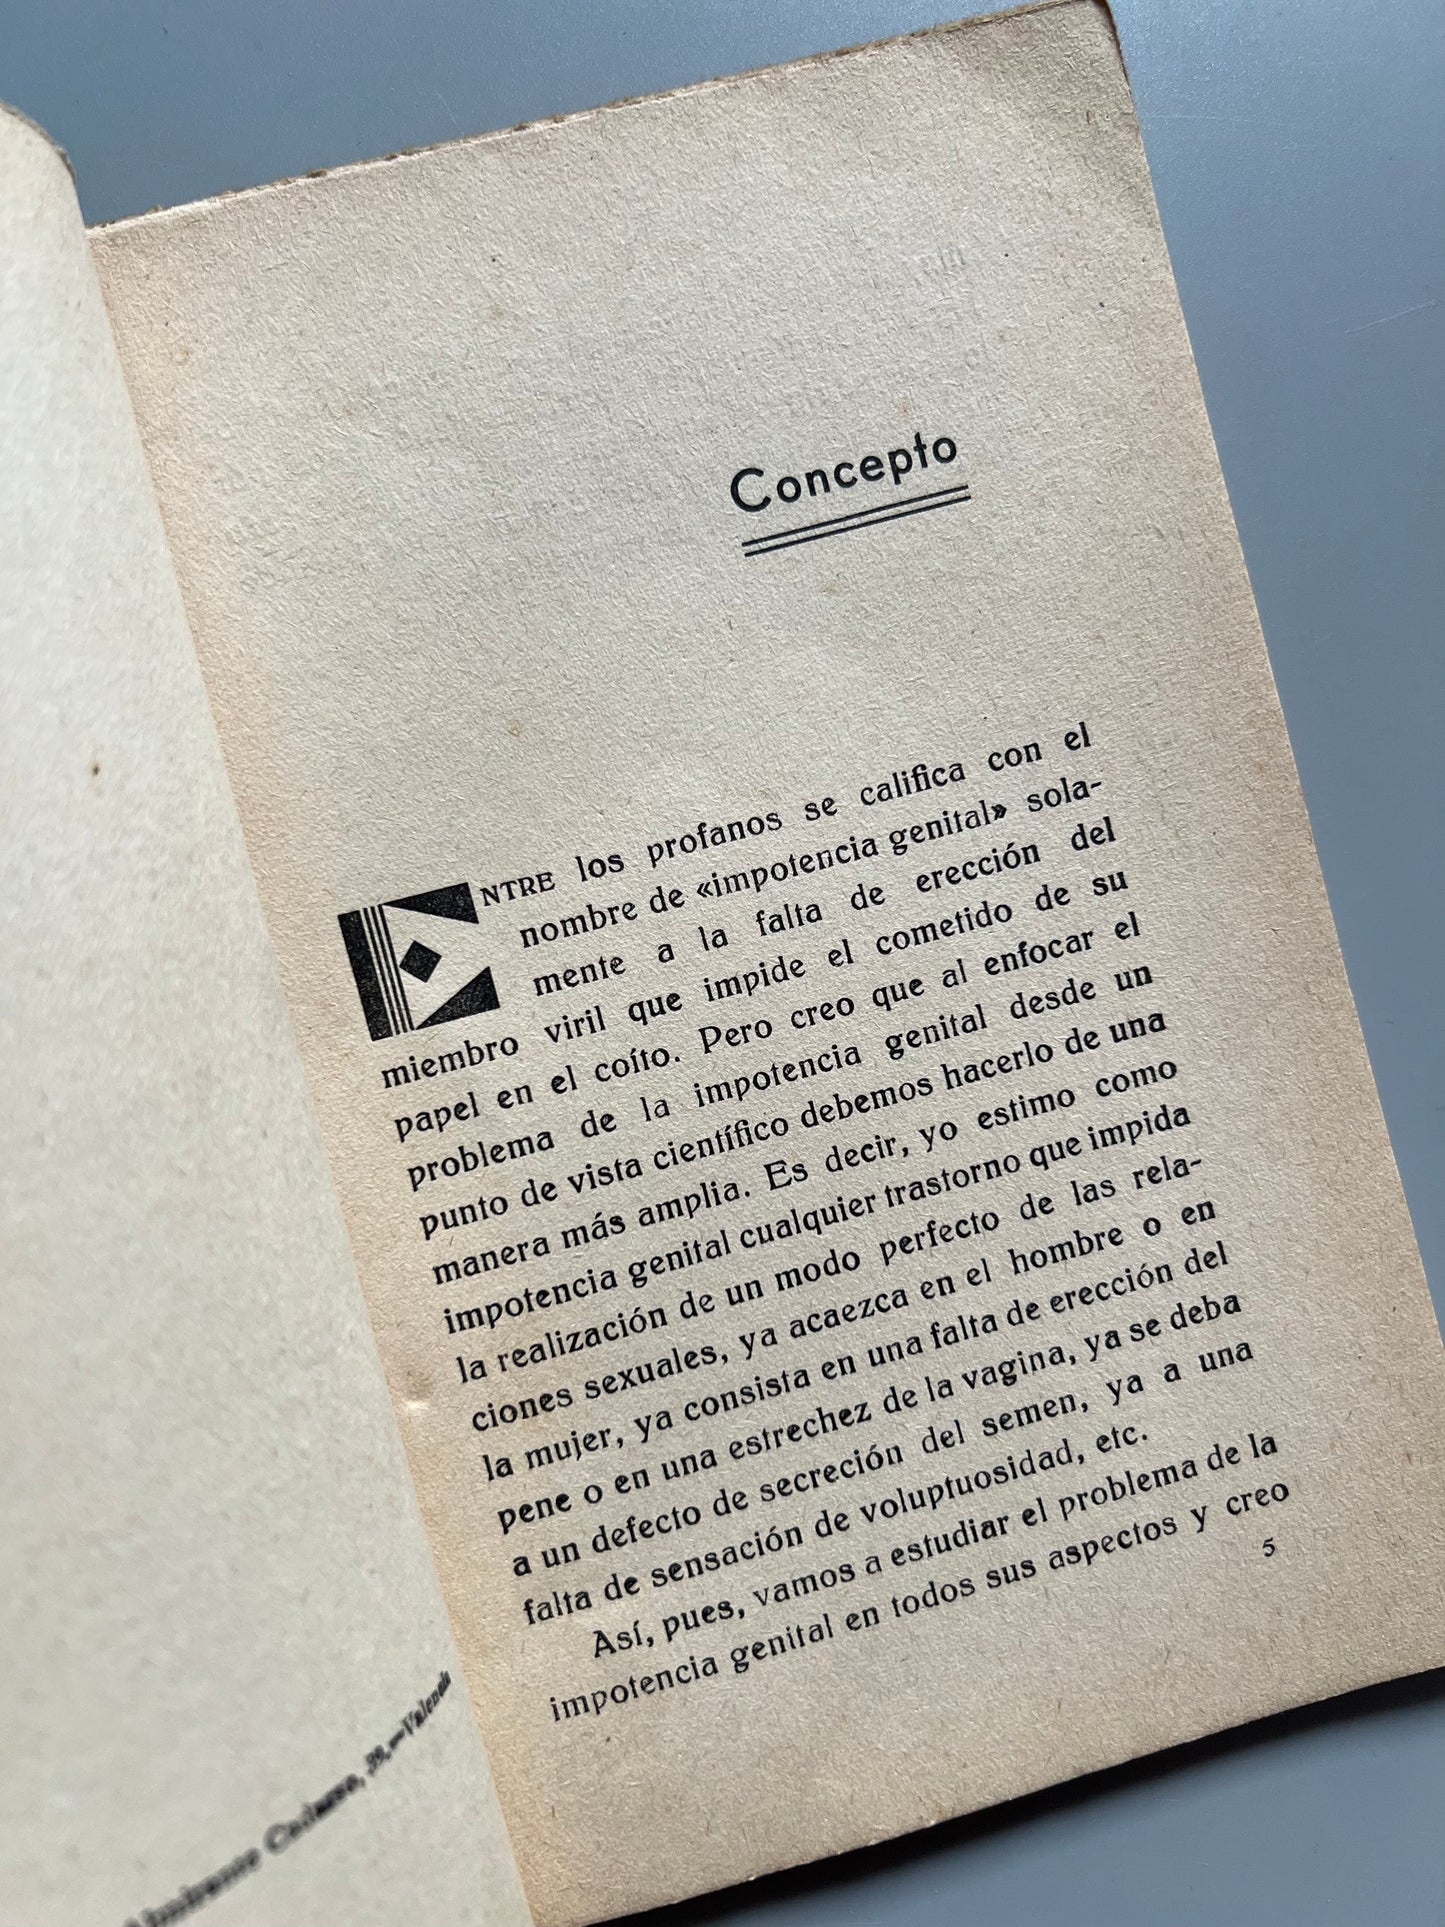 La impotencia genital, Eduardo Arias Vallejo - Biblioteca de Estudios, 1934